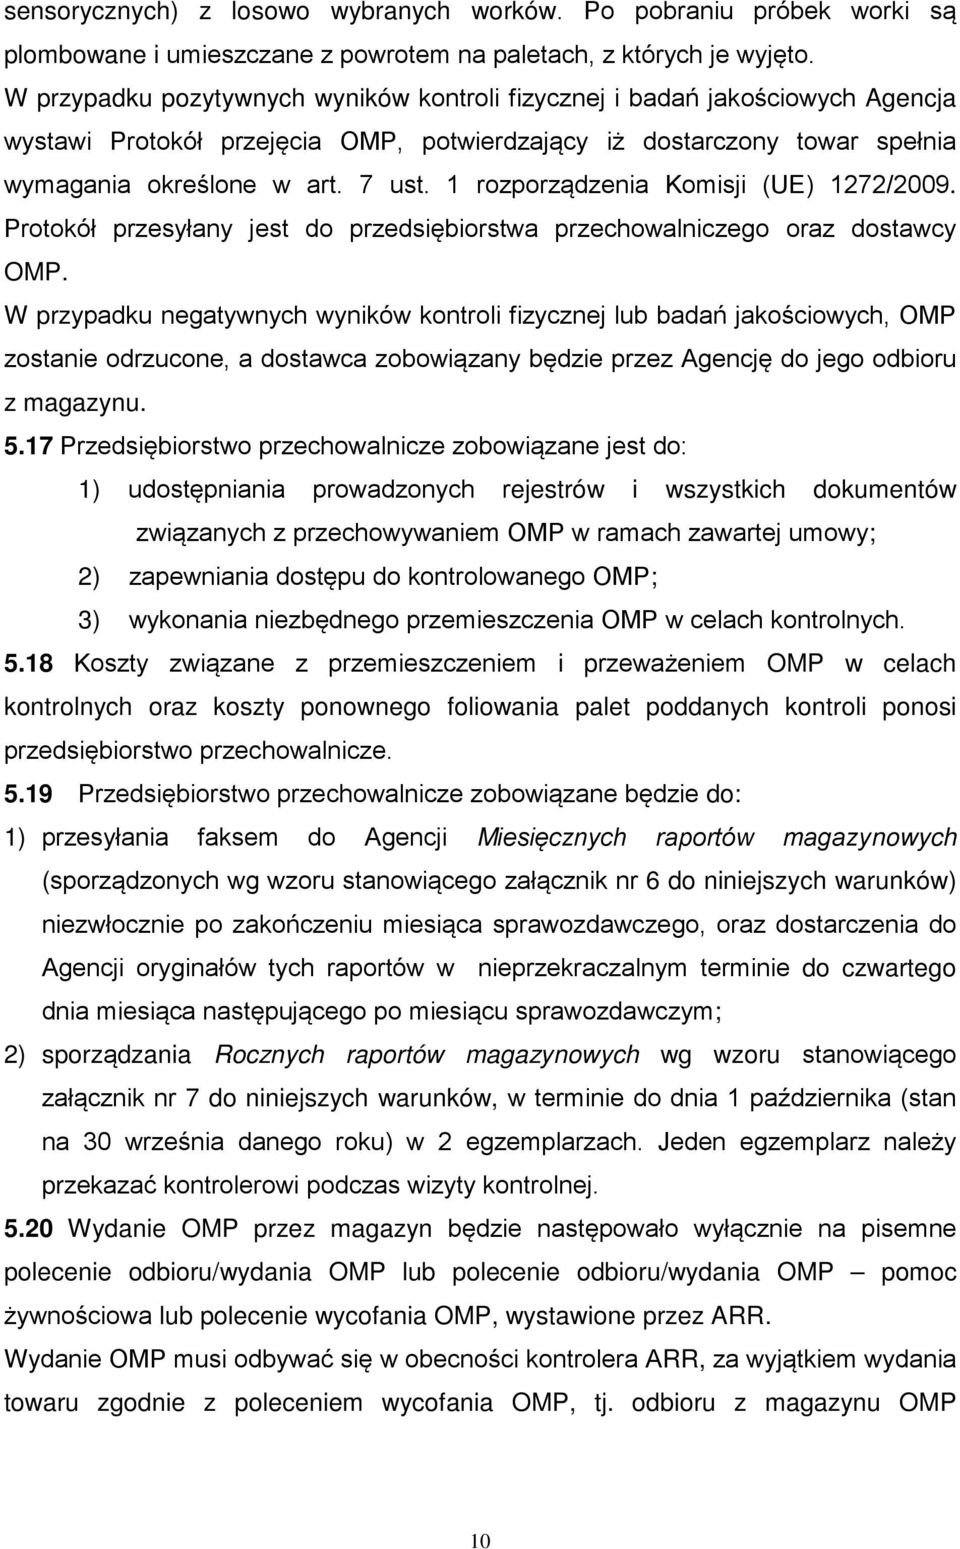 1 rozporządzenia Komisji (UE) 1272/2009. Protokół przesyłany jest do przedsiębiorstwa przechowalniczego oraz dostawcy OMP.